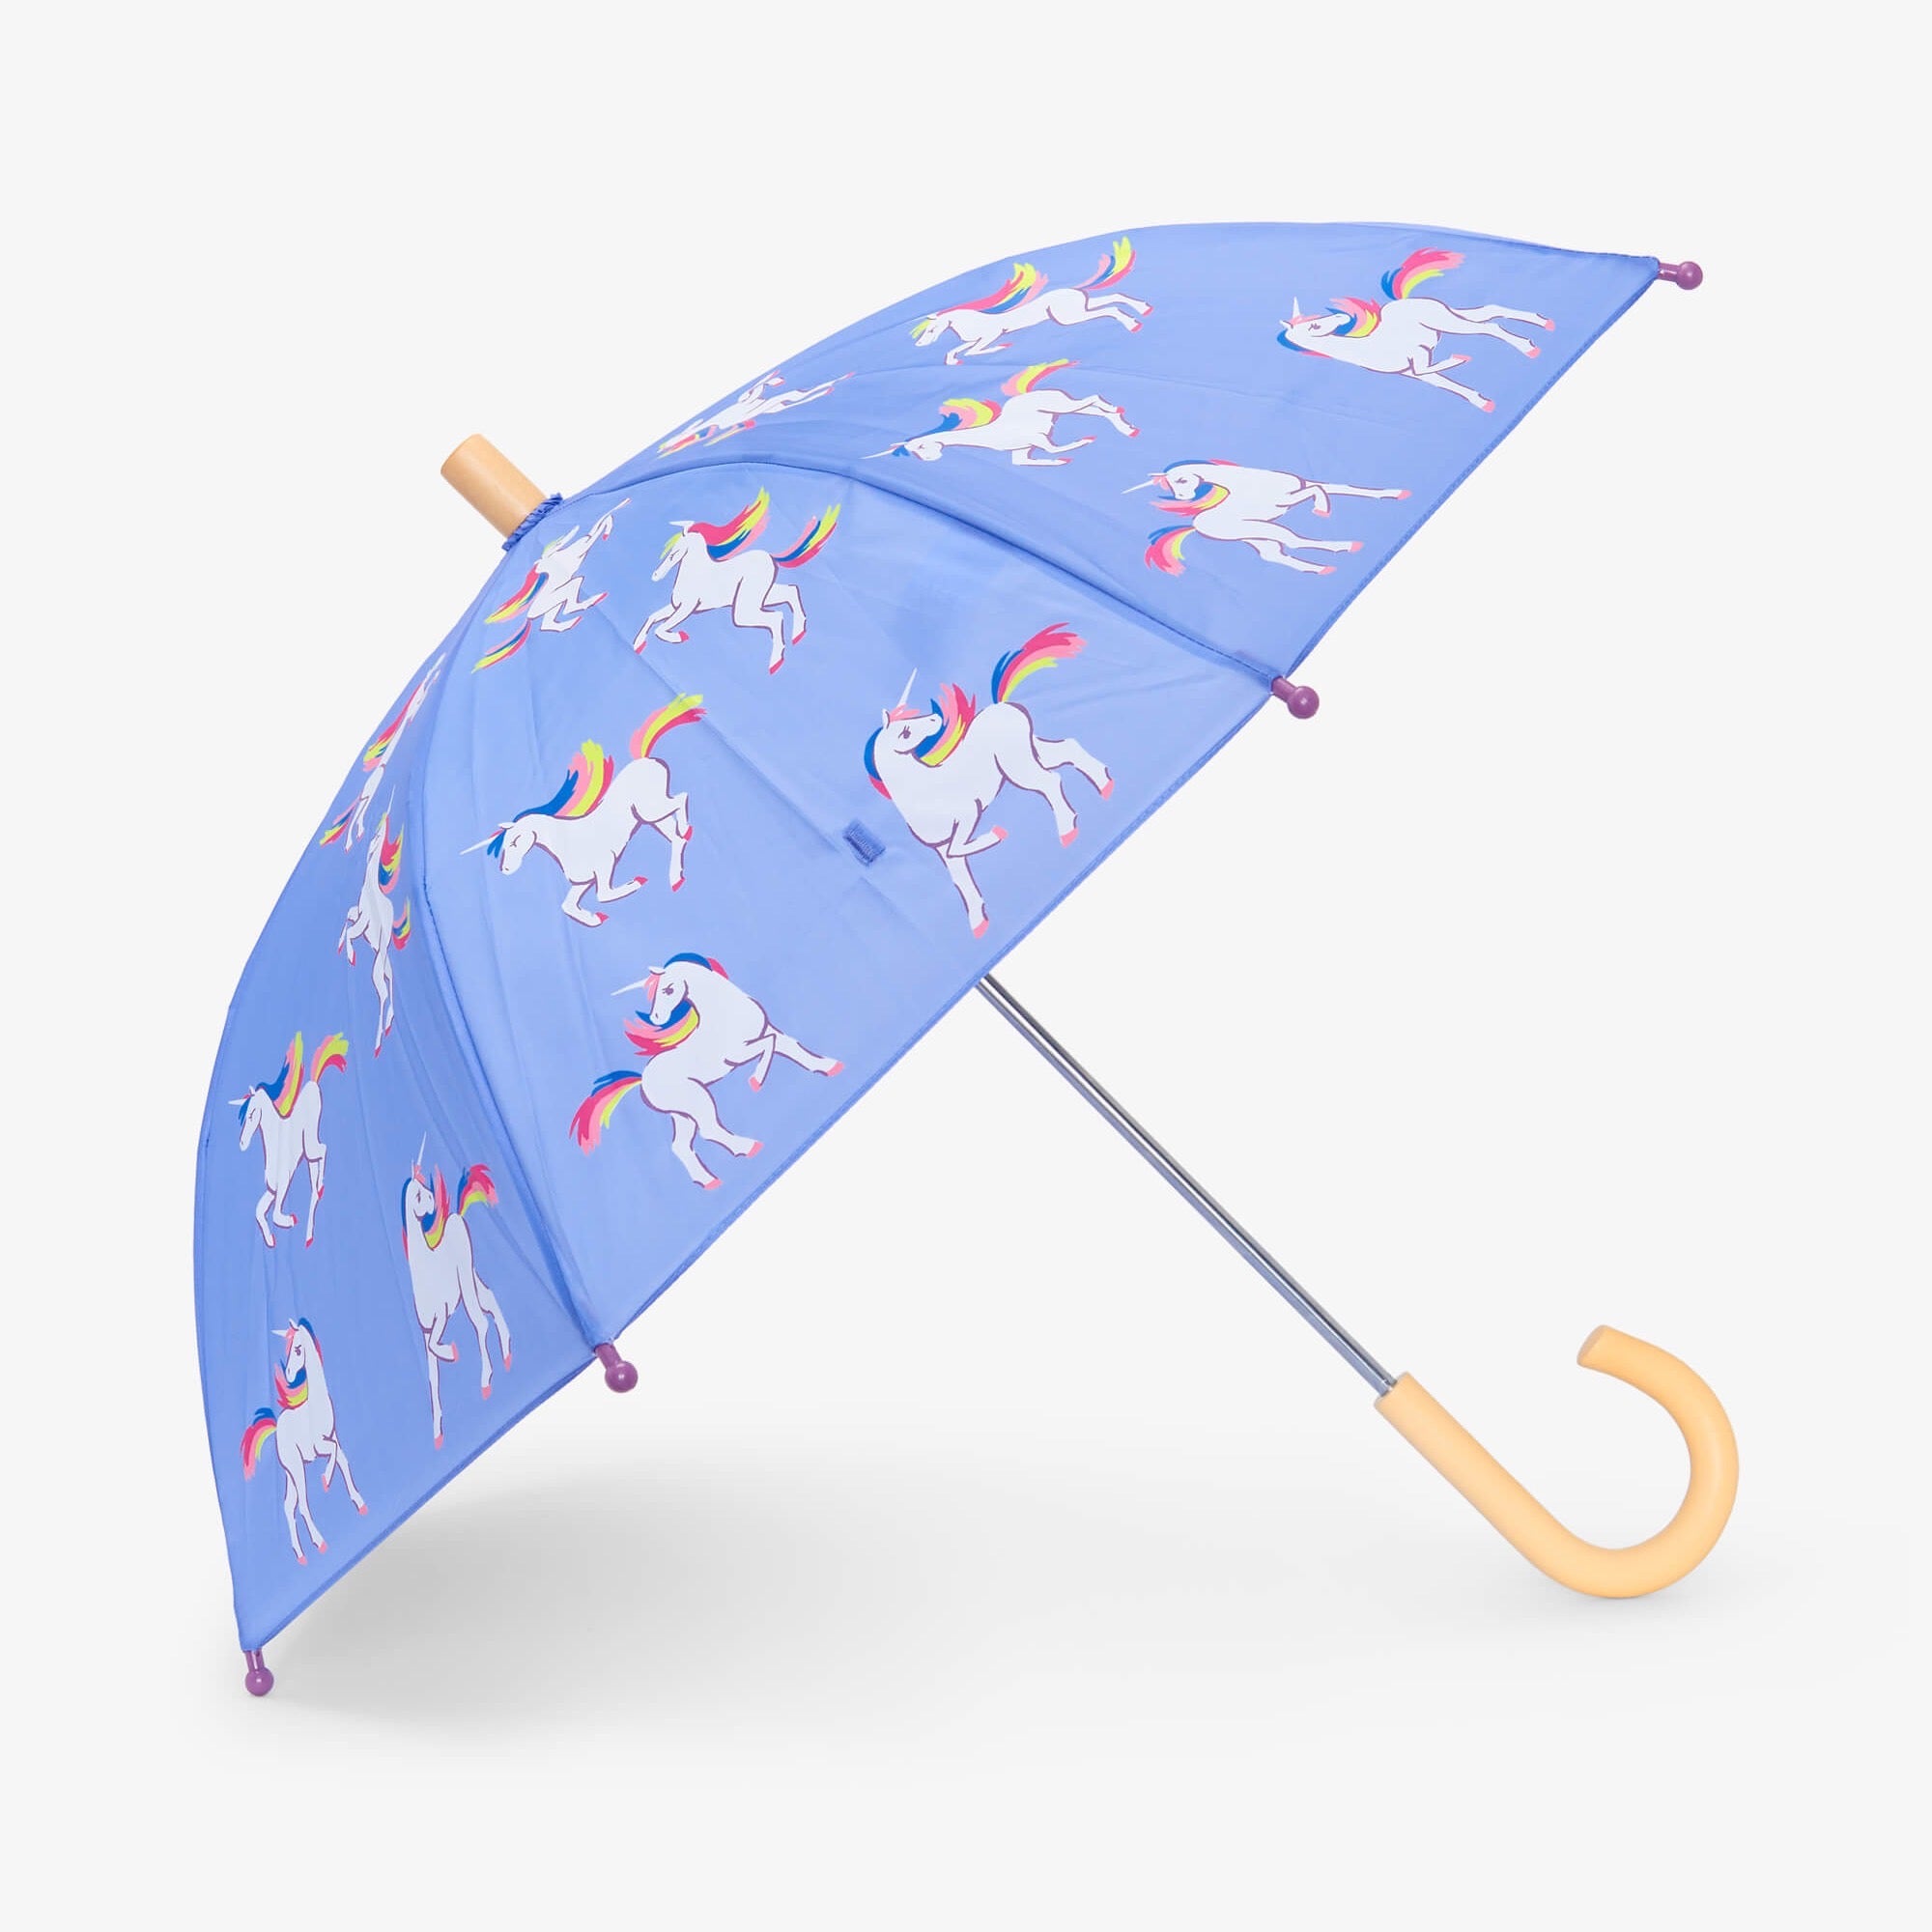 Hatley Unicorn Sky Umbrella S23muk021 Accessories ONE SIZE / Lavender